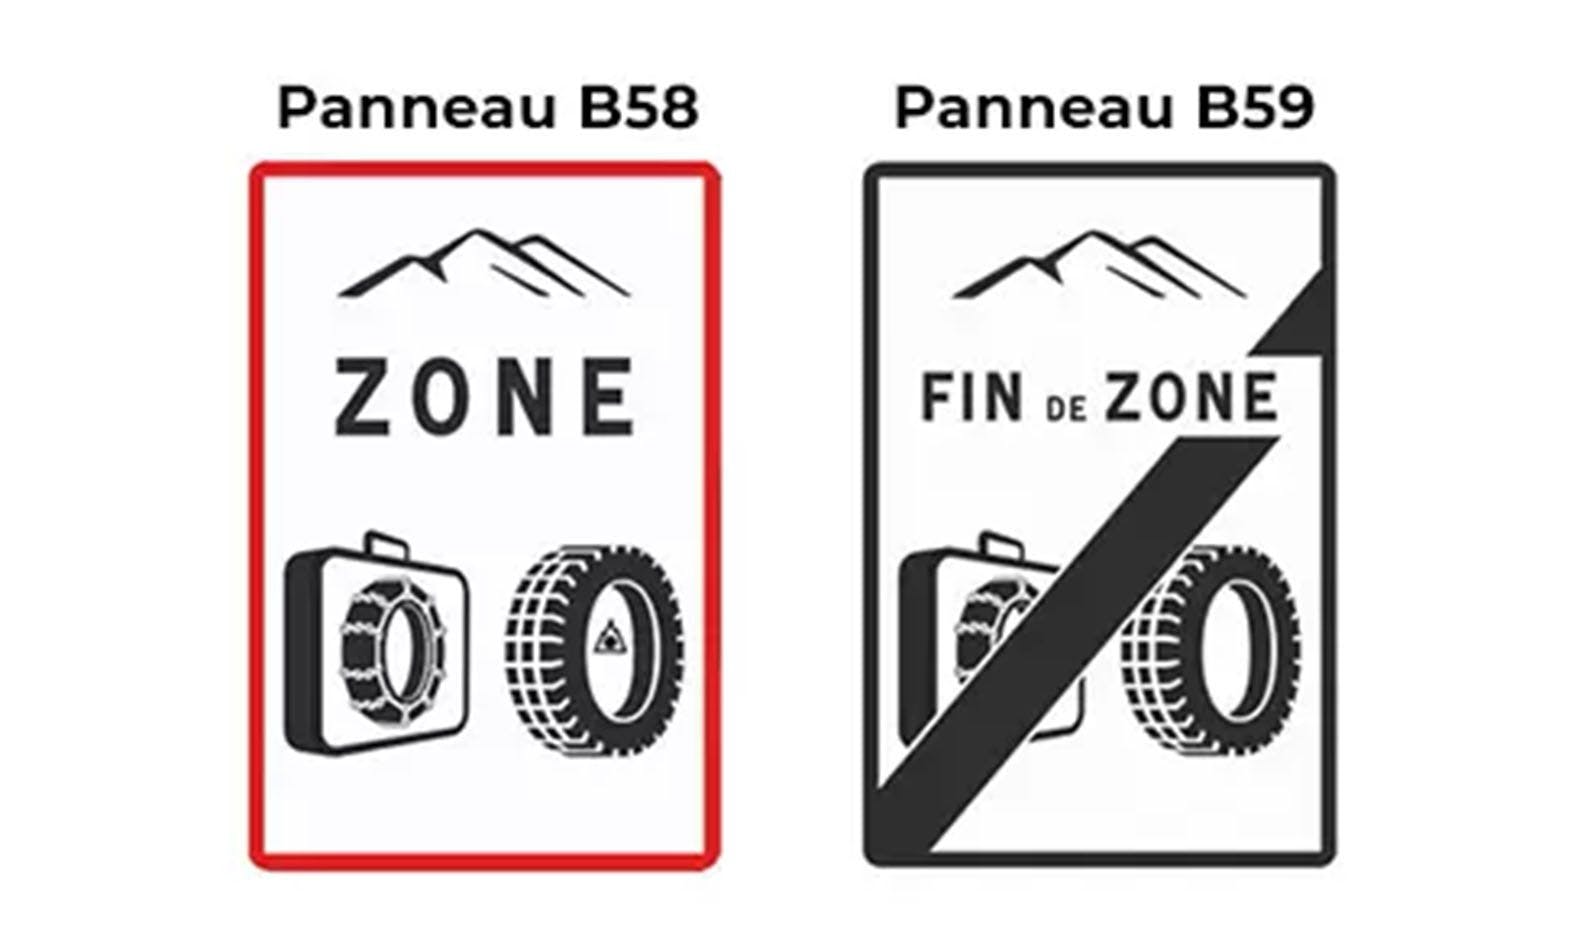 Panneaux de signalisation B58 et B59.